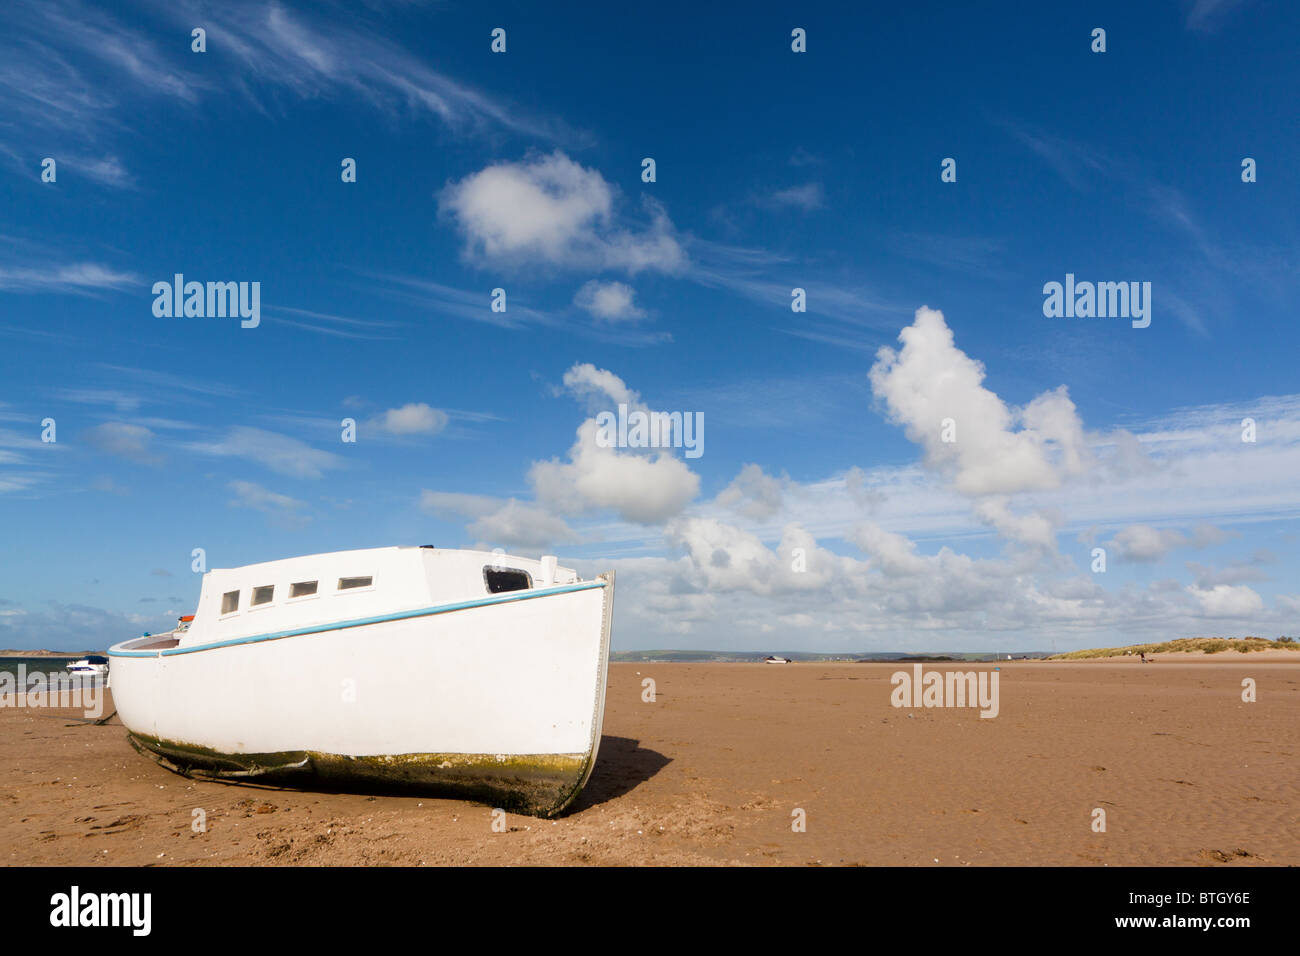 Un petit bateau blanc se situe sur le sable doré de la plage de Instow dans le nord du Devon UK il y a un ciel bleu et nuages blancs moelleux Banque D'Images